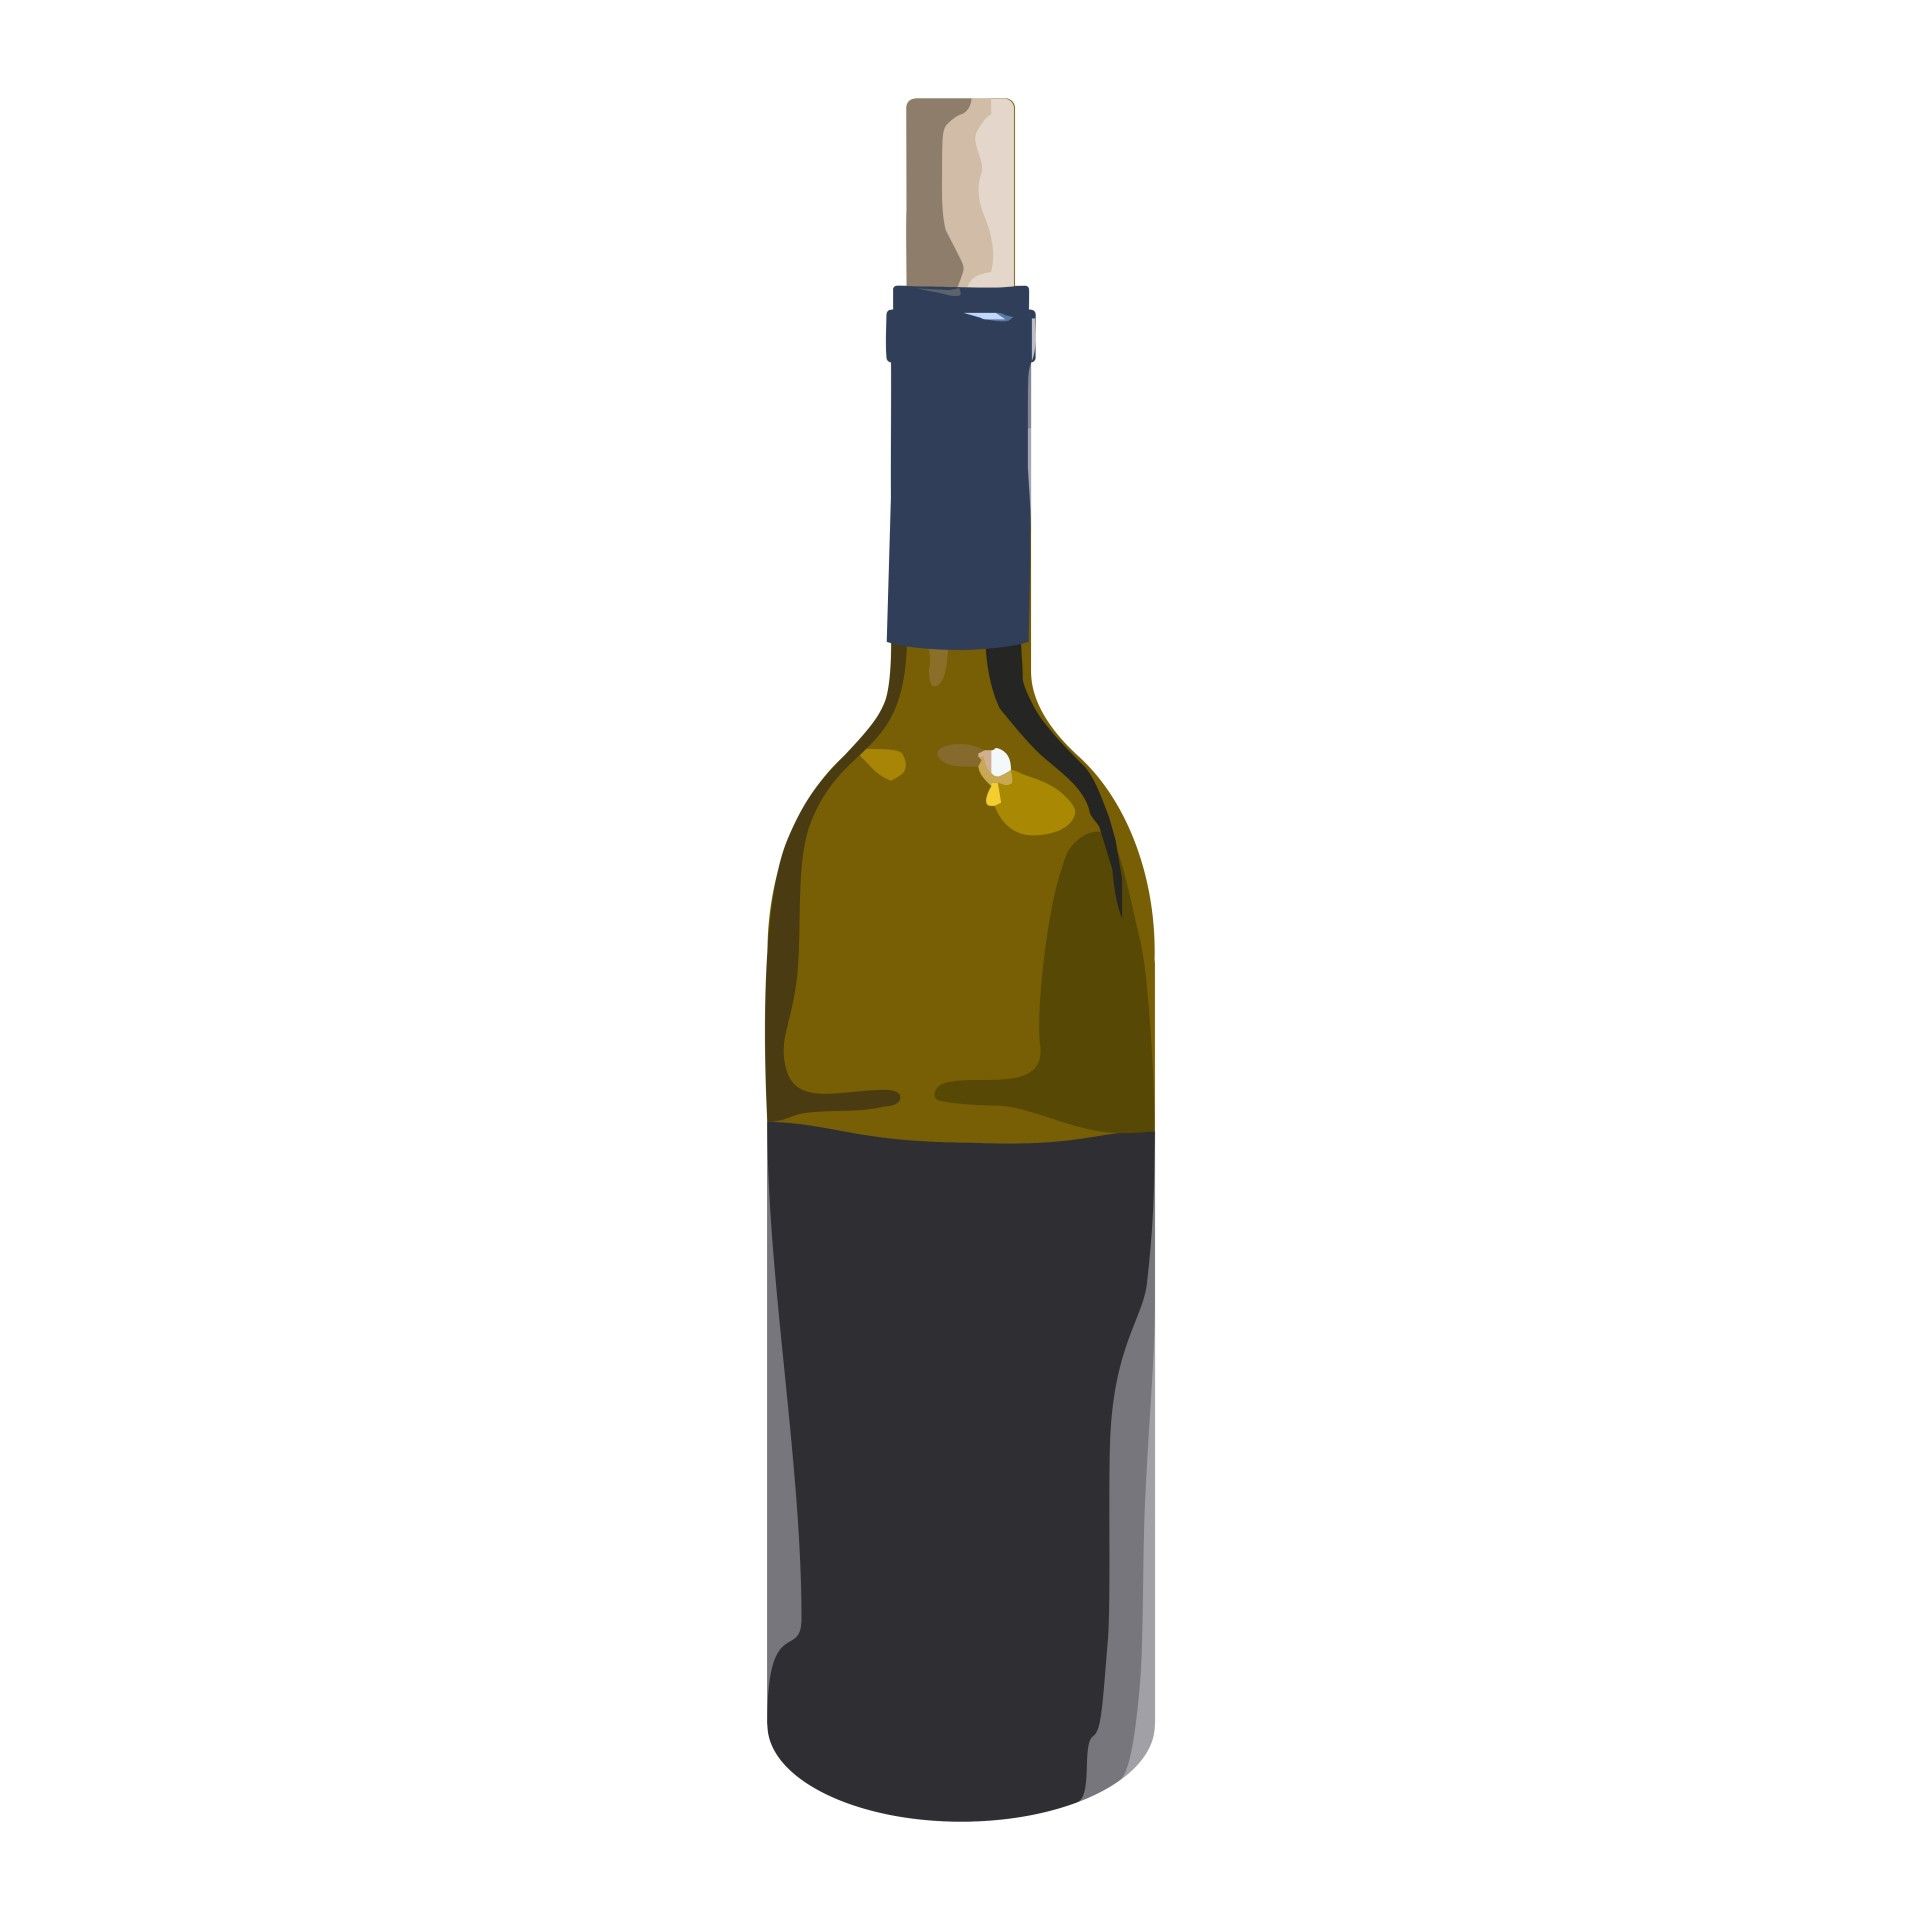 Hd Images Of Wine Bottle - HD Wallpaper 